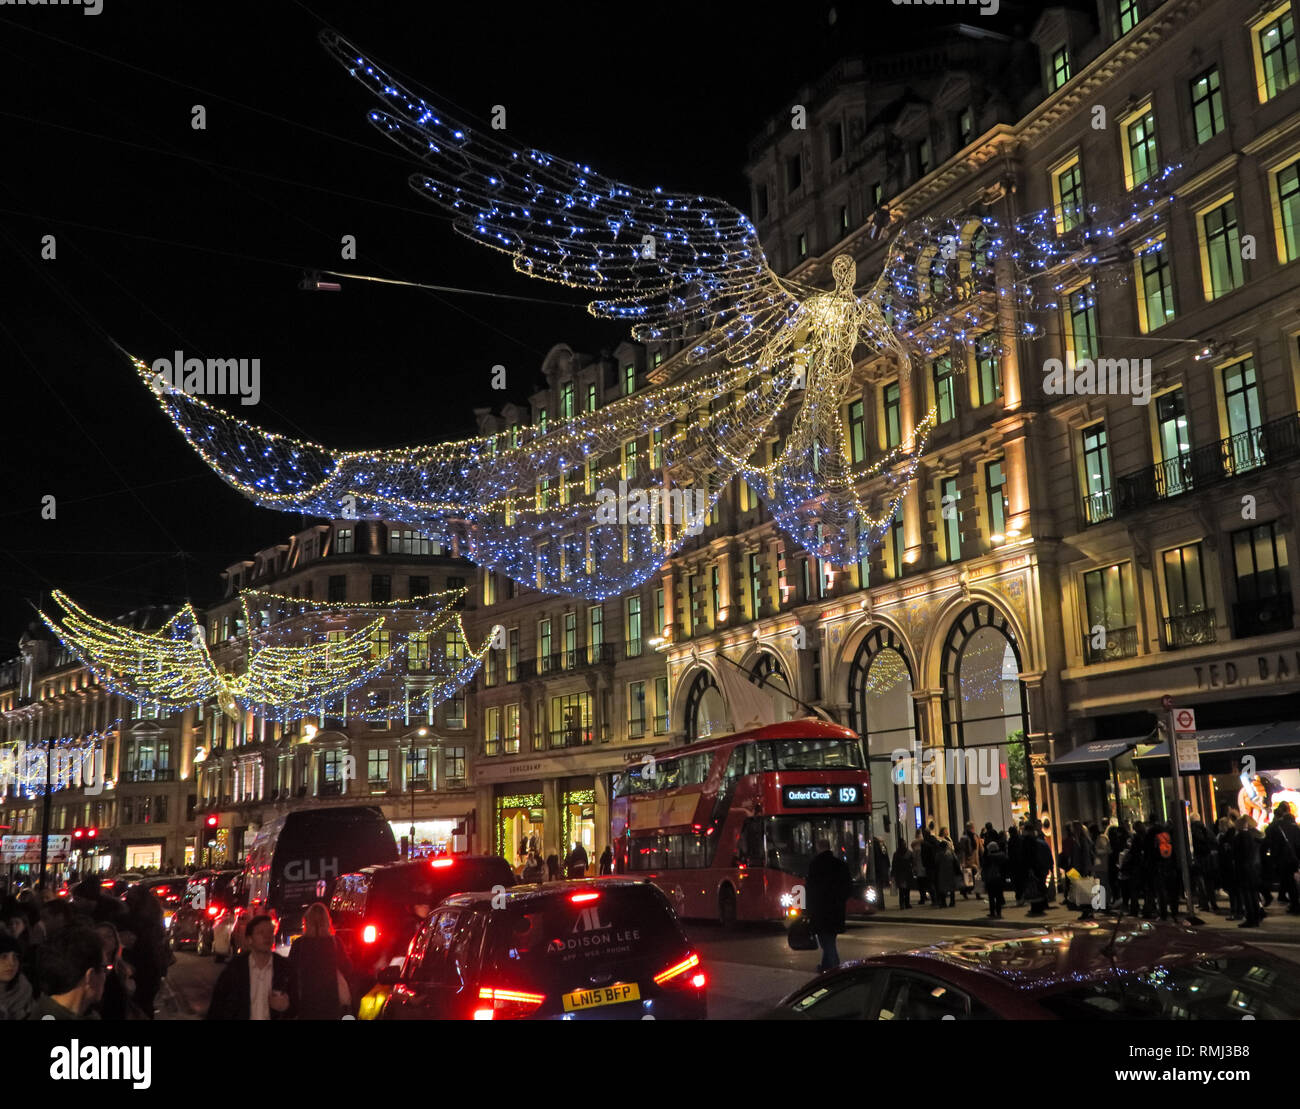 Angel et les lumières de Noël, 245 Regent Street, Mayfair, Londres, Angleterre, Royaume-Uni, W1B 2FR Banque D'Images